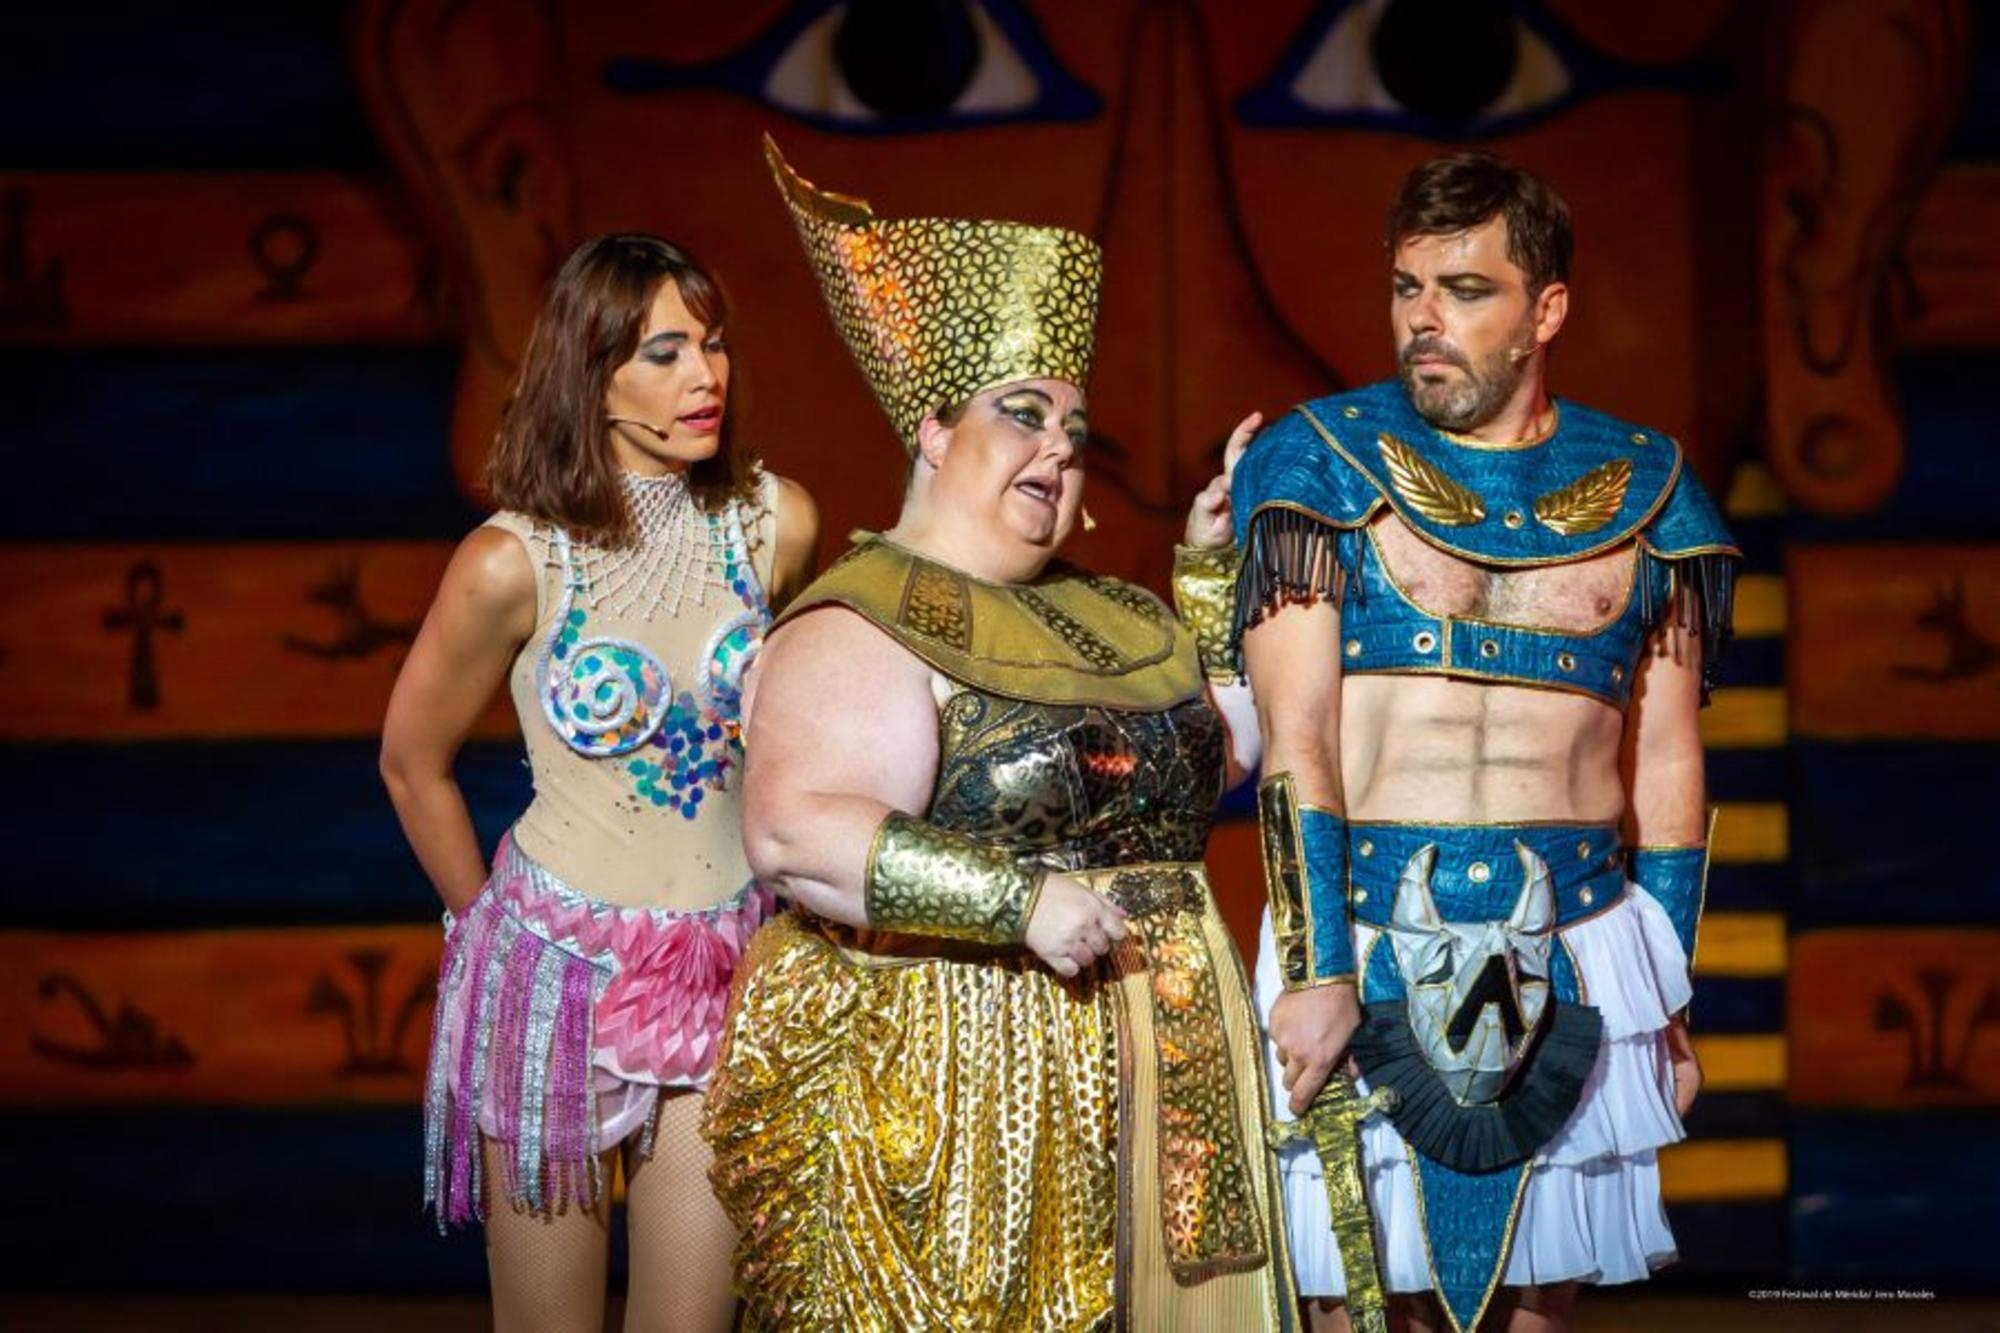 Teatro Clásico de Mérida: La corte del faraón